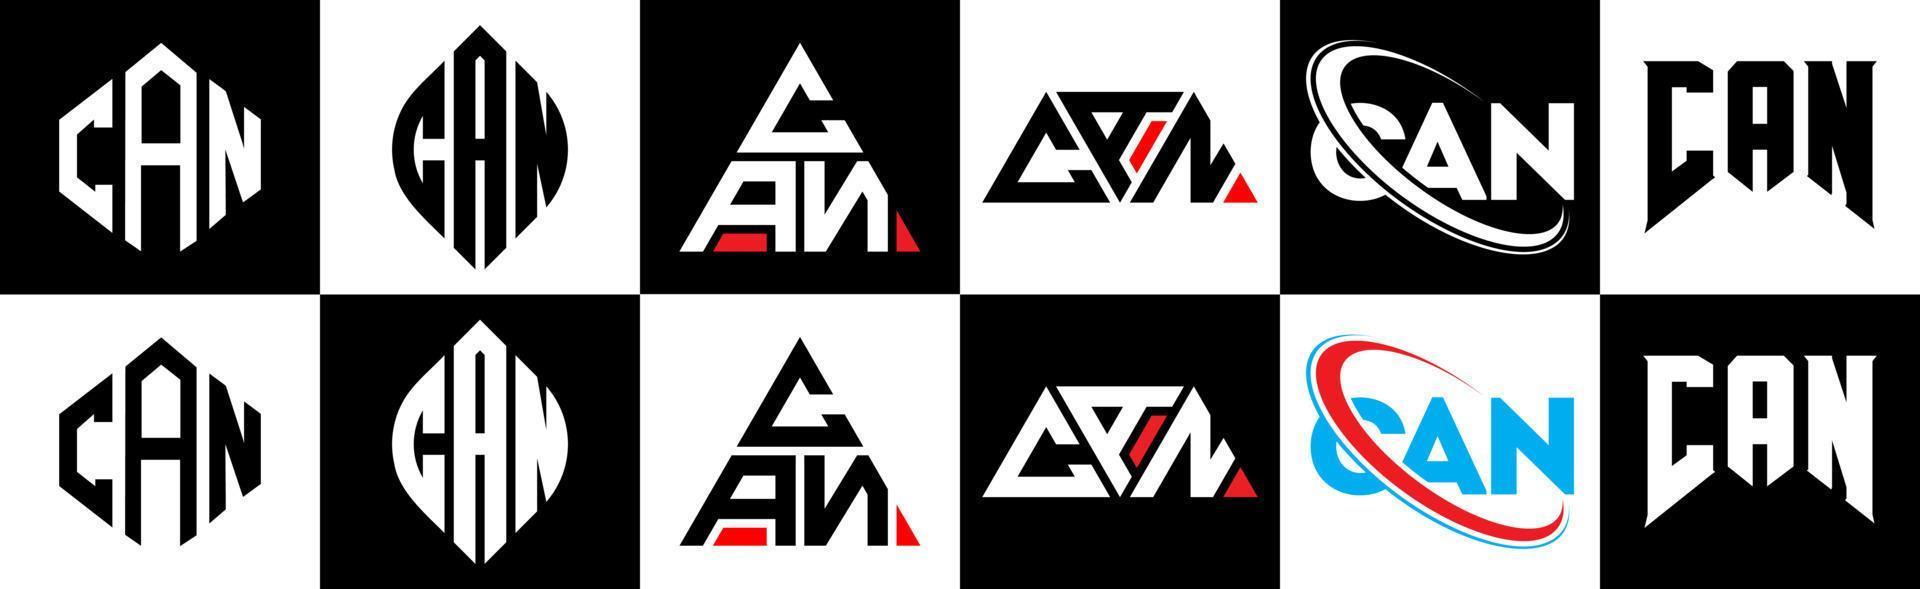 kann Logo-Design in sechs Stilen schreiben. kann Polygon, Kreis, Dreieck, Sechseck, flacher und einfacher Stil mit schwarz-weißem Buchstabenlogo in einer Zeichenfläche. kann minimalistisches und klassisches Logo vektor